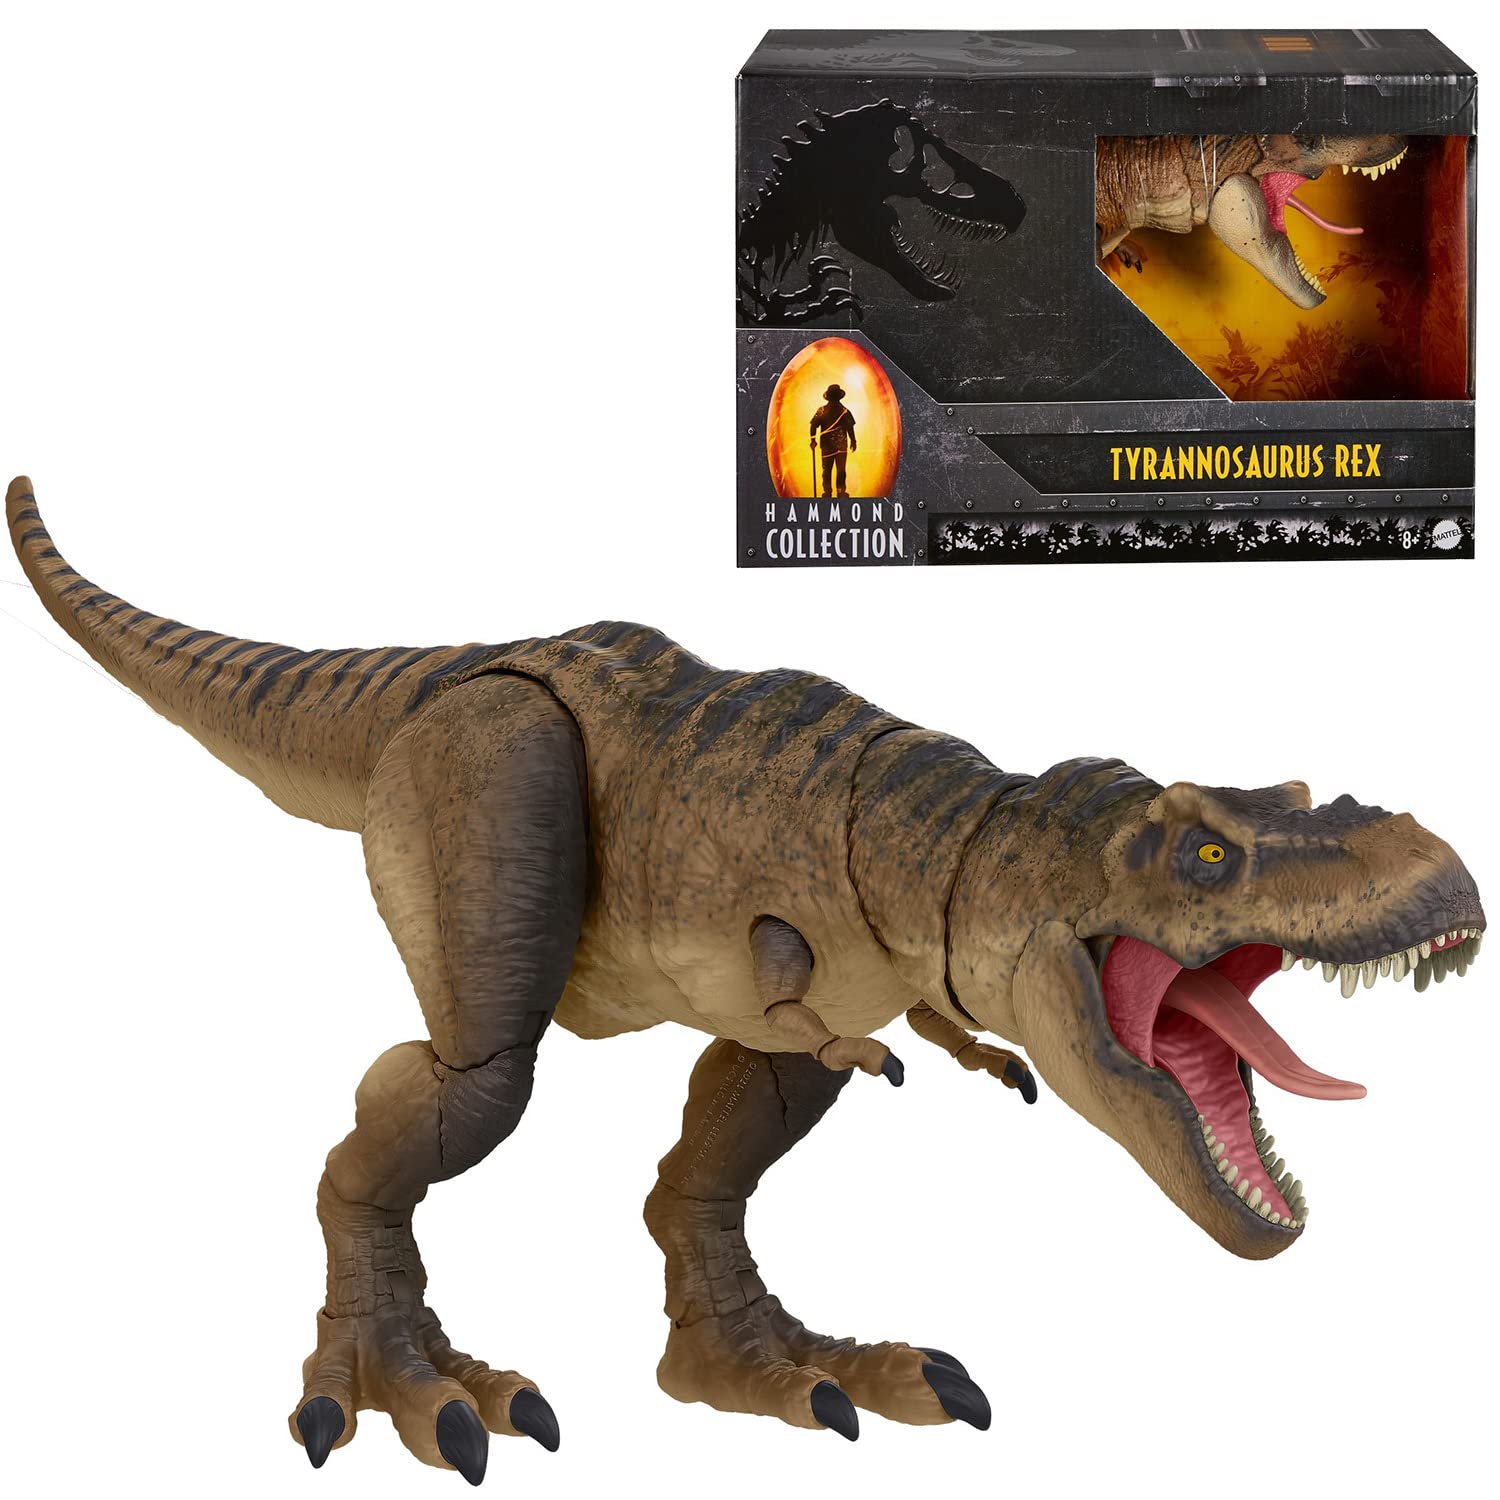 Jurassic Park Tyrannosaurus Rex Collector 24-in Dinosaur Figure - Hammond Collection $39.99